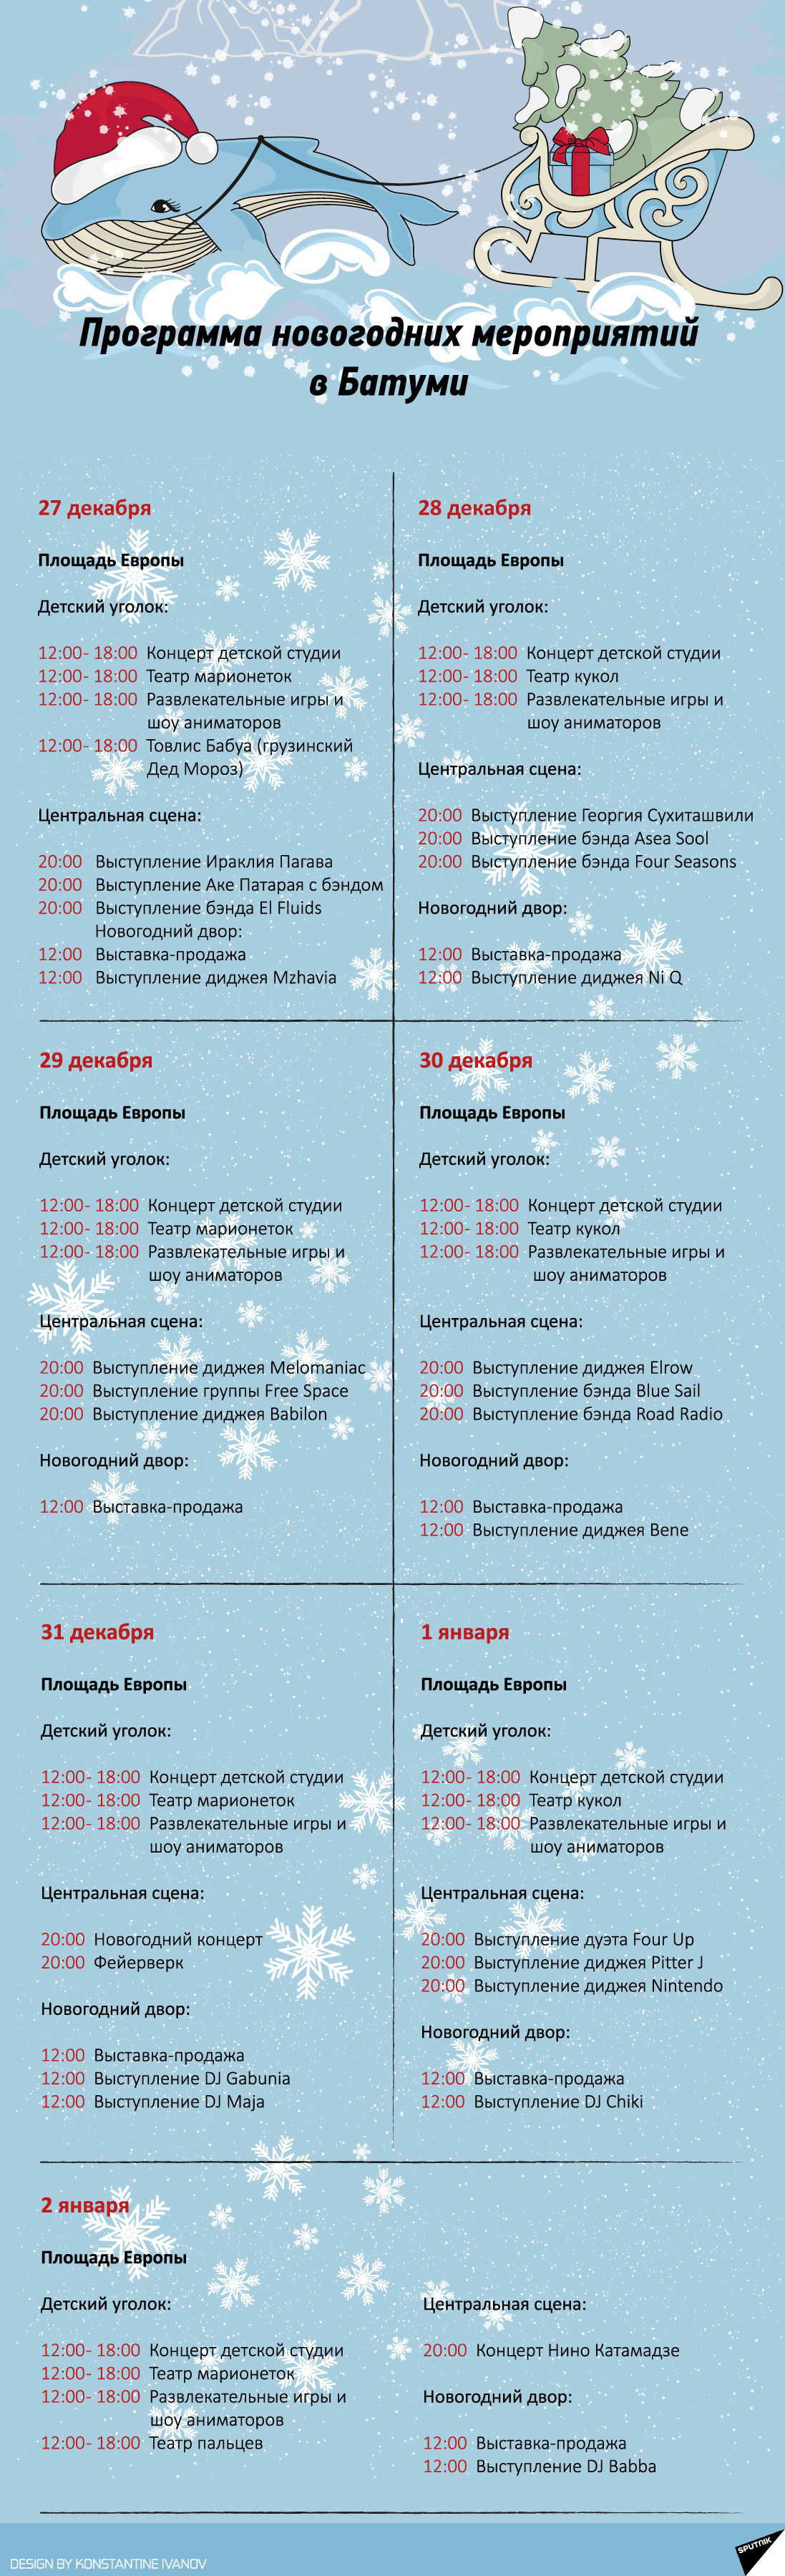 Программа новогодних мероприятий в Батуми - Sputnik Грузия